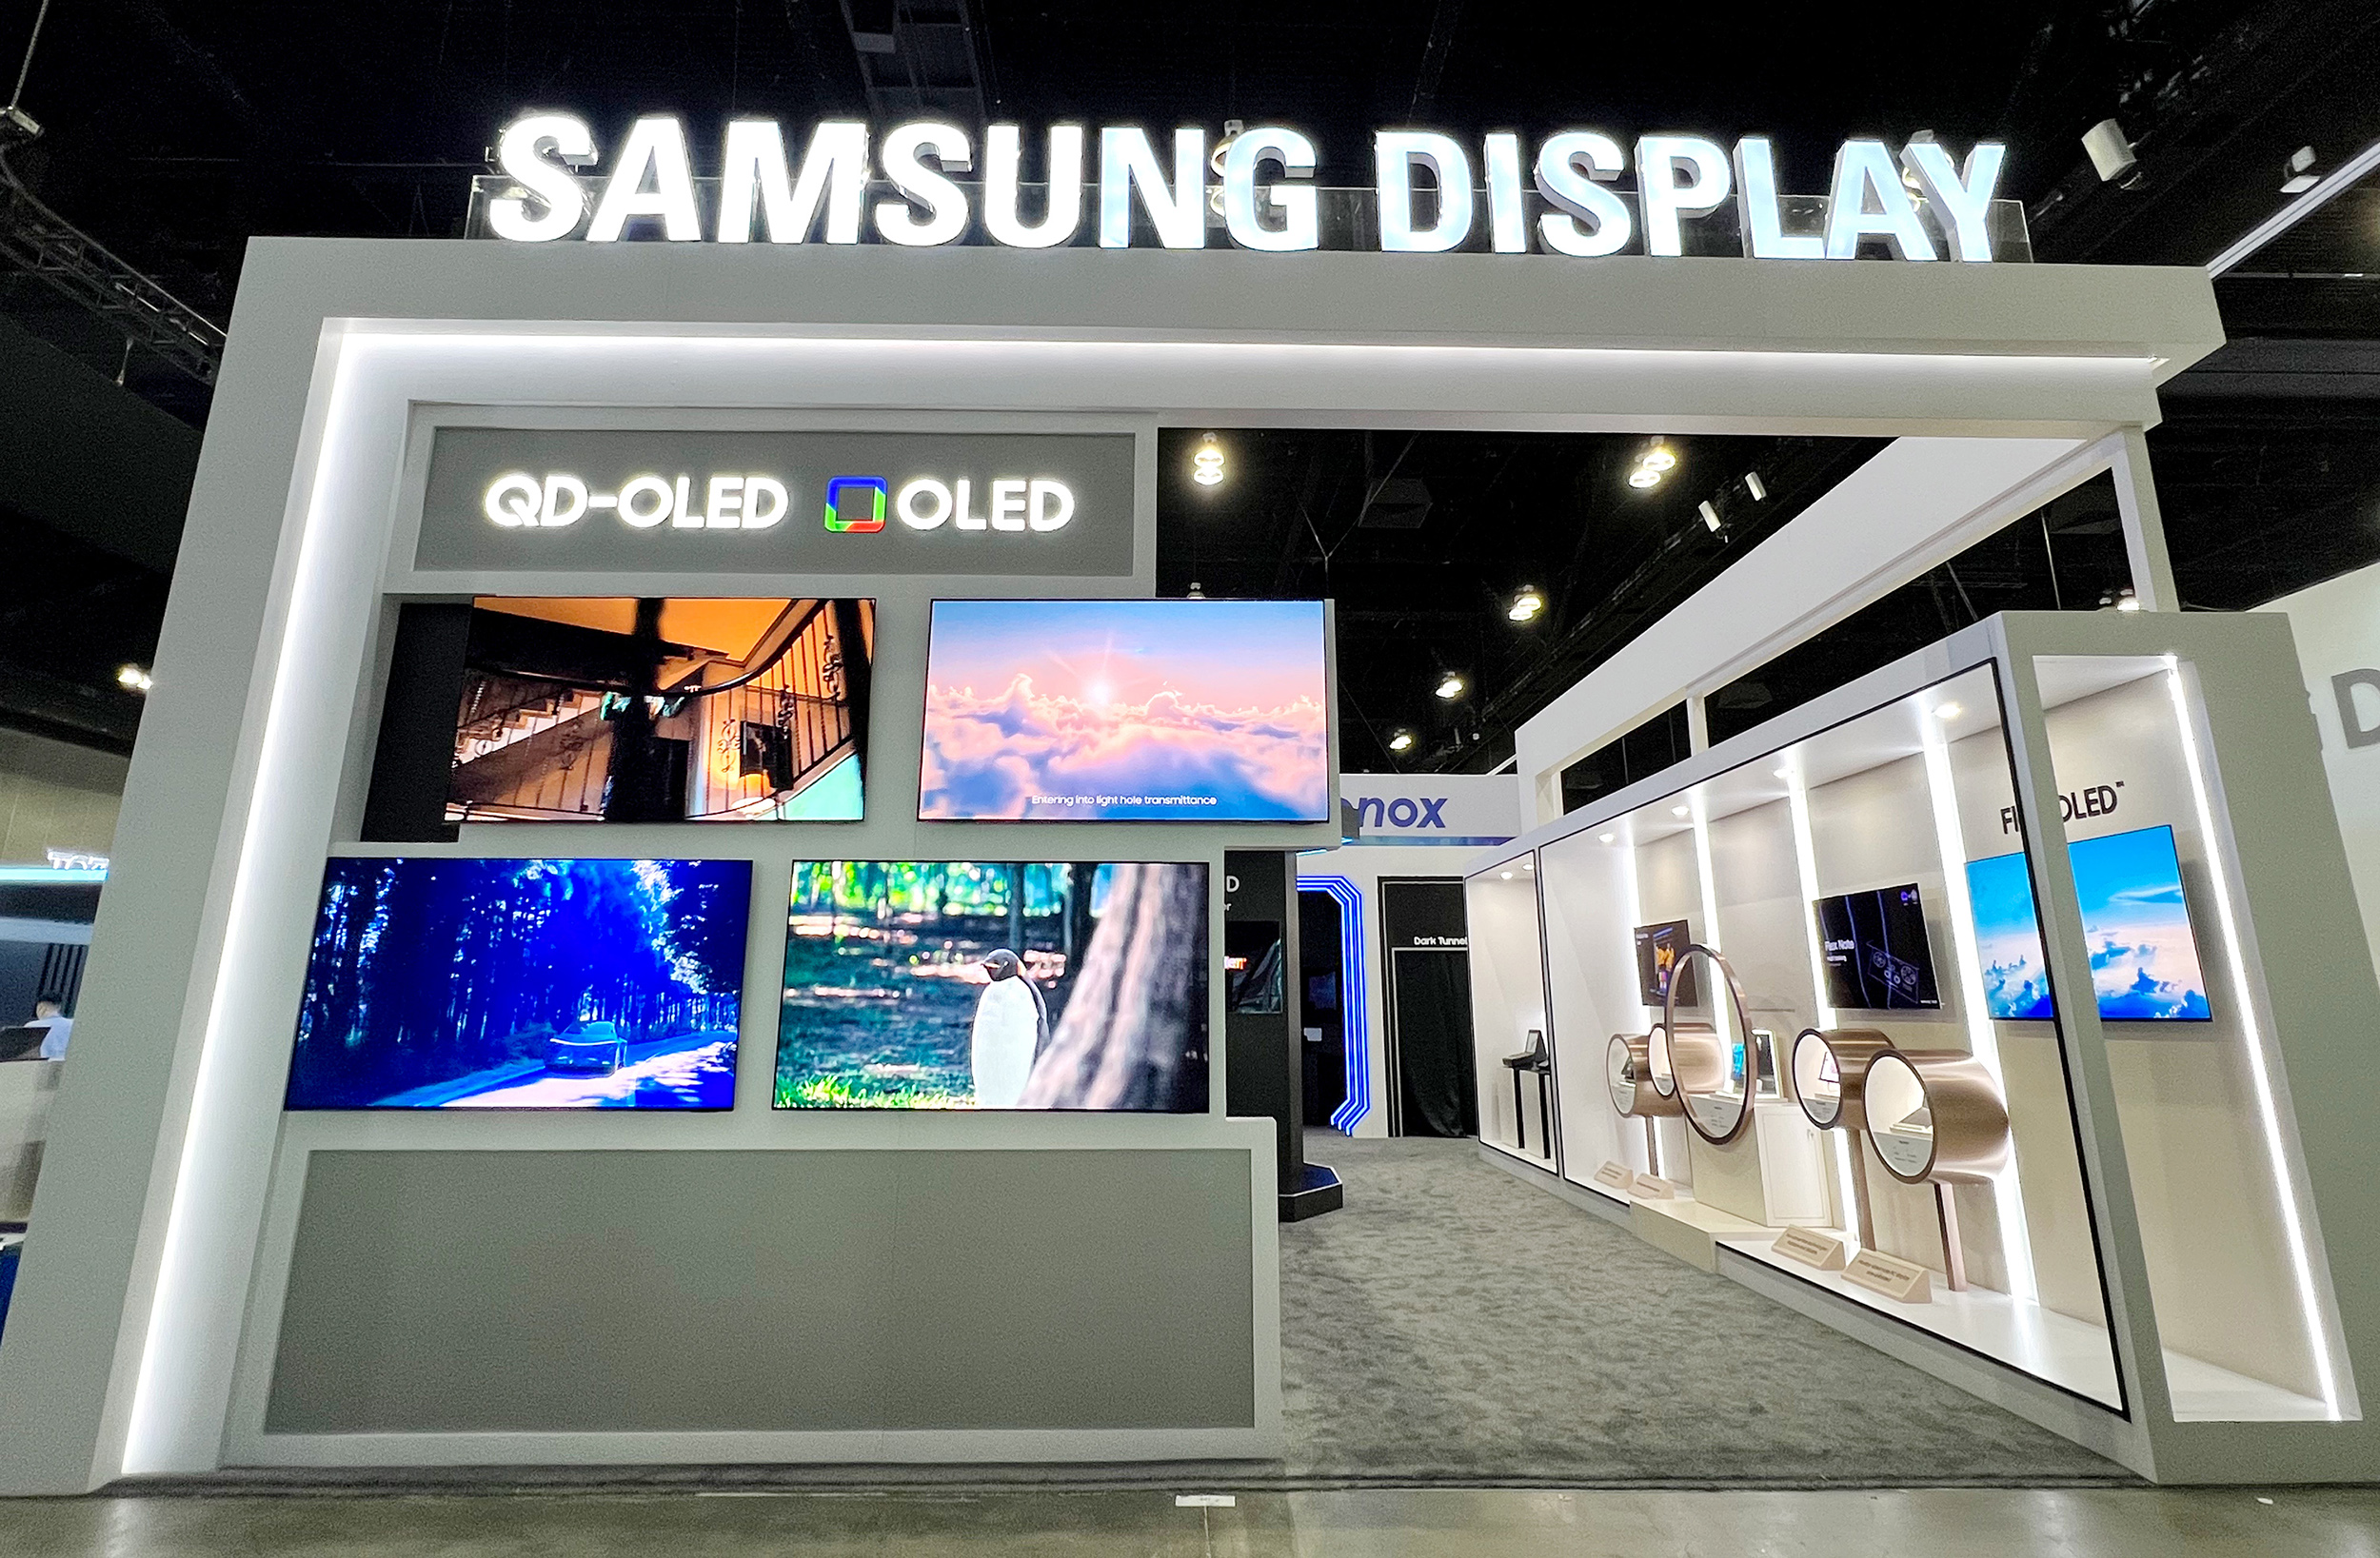 La nueva pantalla OLED de Samsung puede medir la frecuencia cardiaca, la presión arterial y leer las huellas dactilares en cualquier lugar